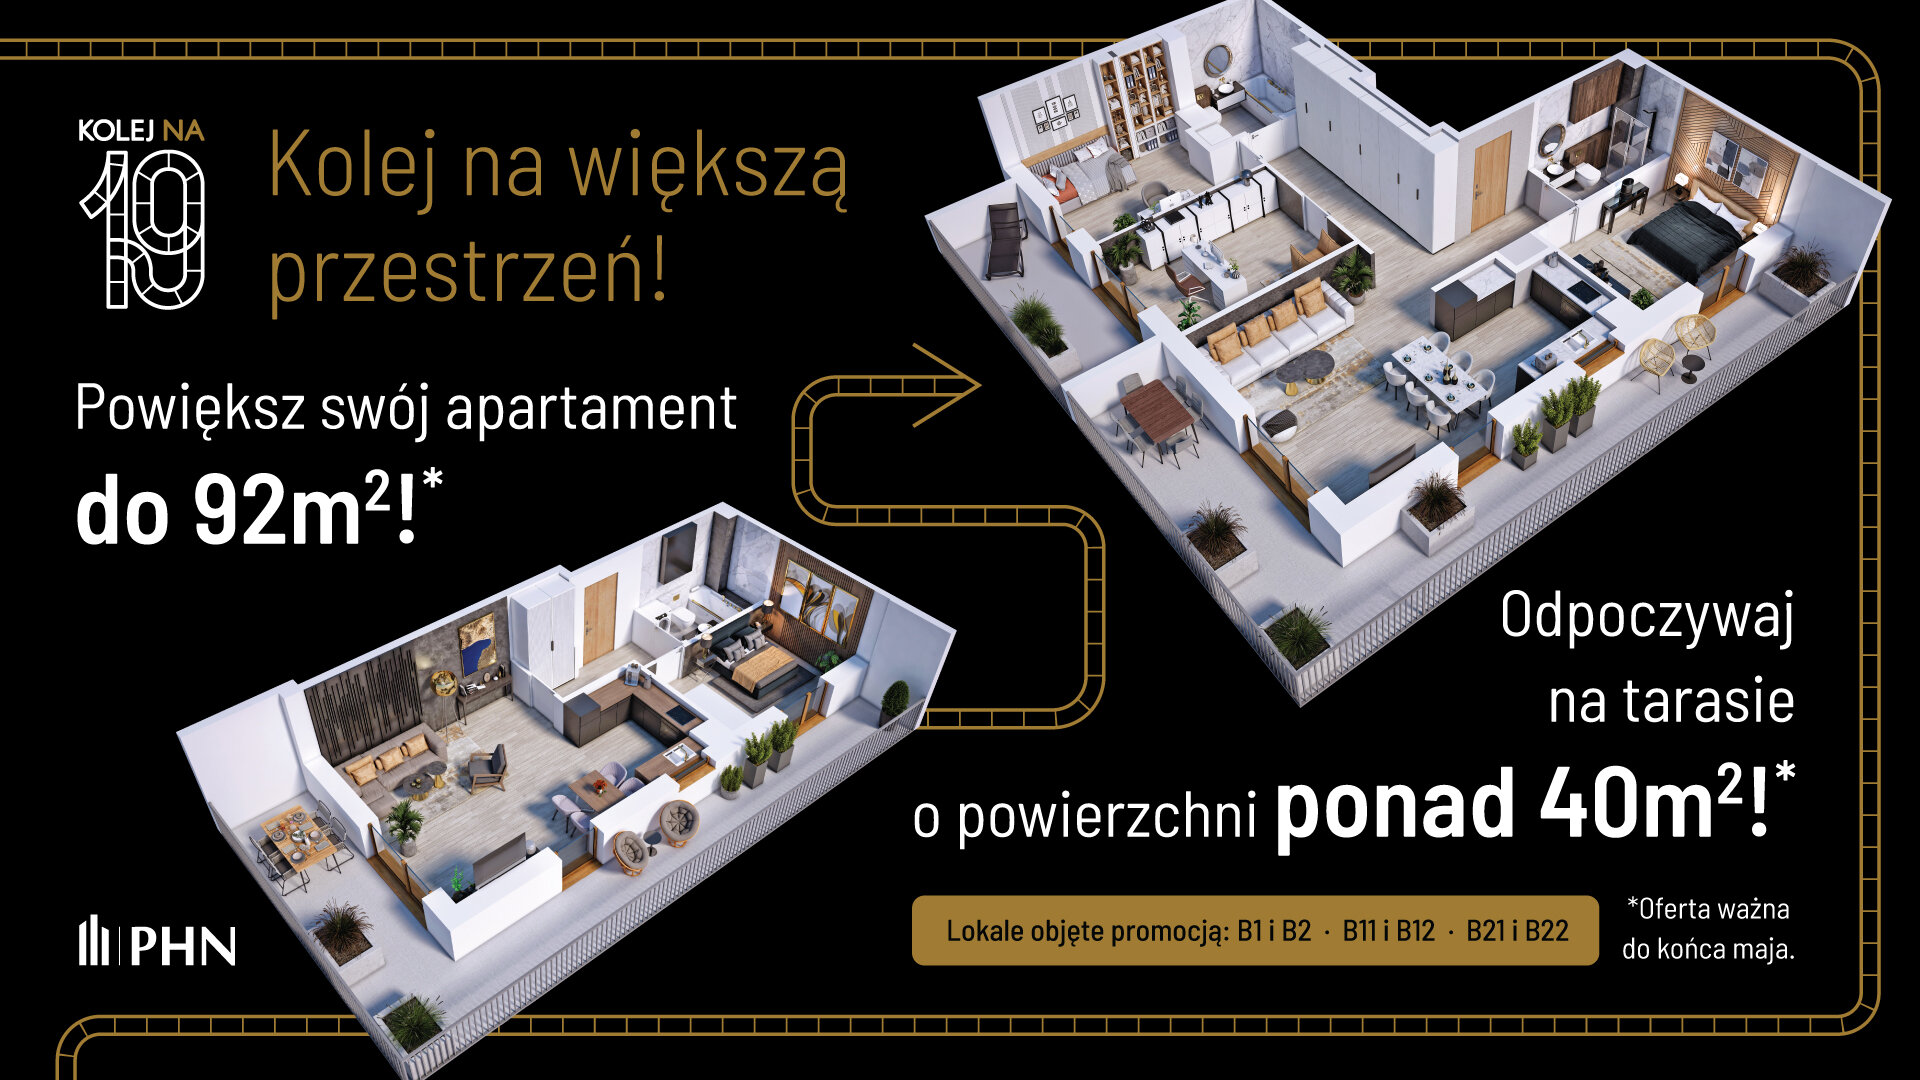 Wiosenna promocja w KOLEJ NA 19 - Apartament, 3 pokoje, Warszawa,57.81 m²,1 058 154 zł